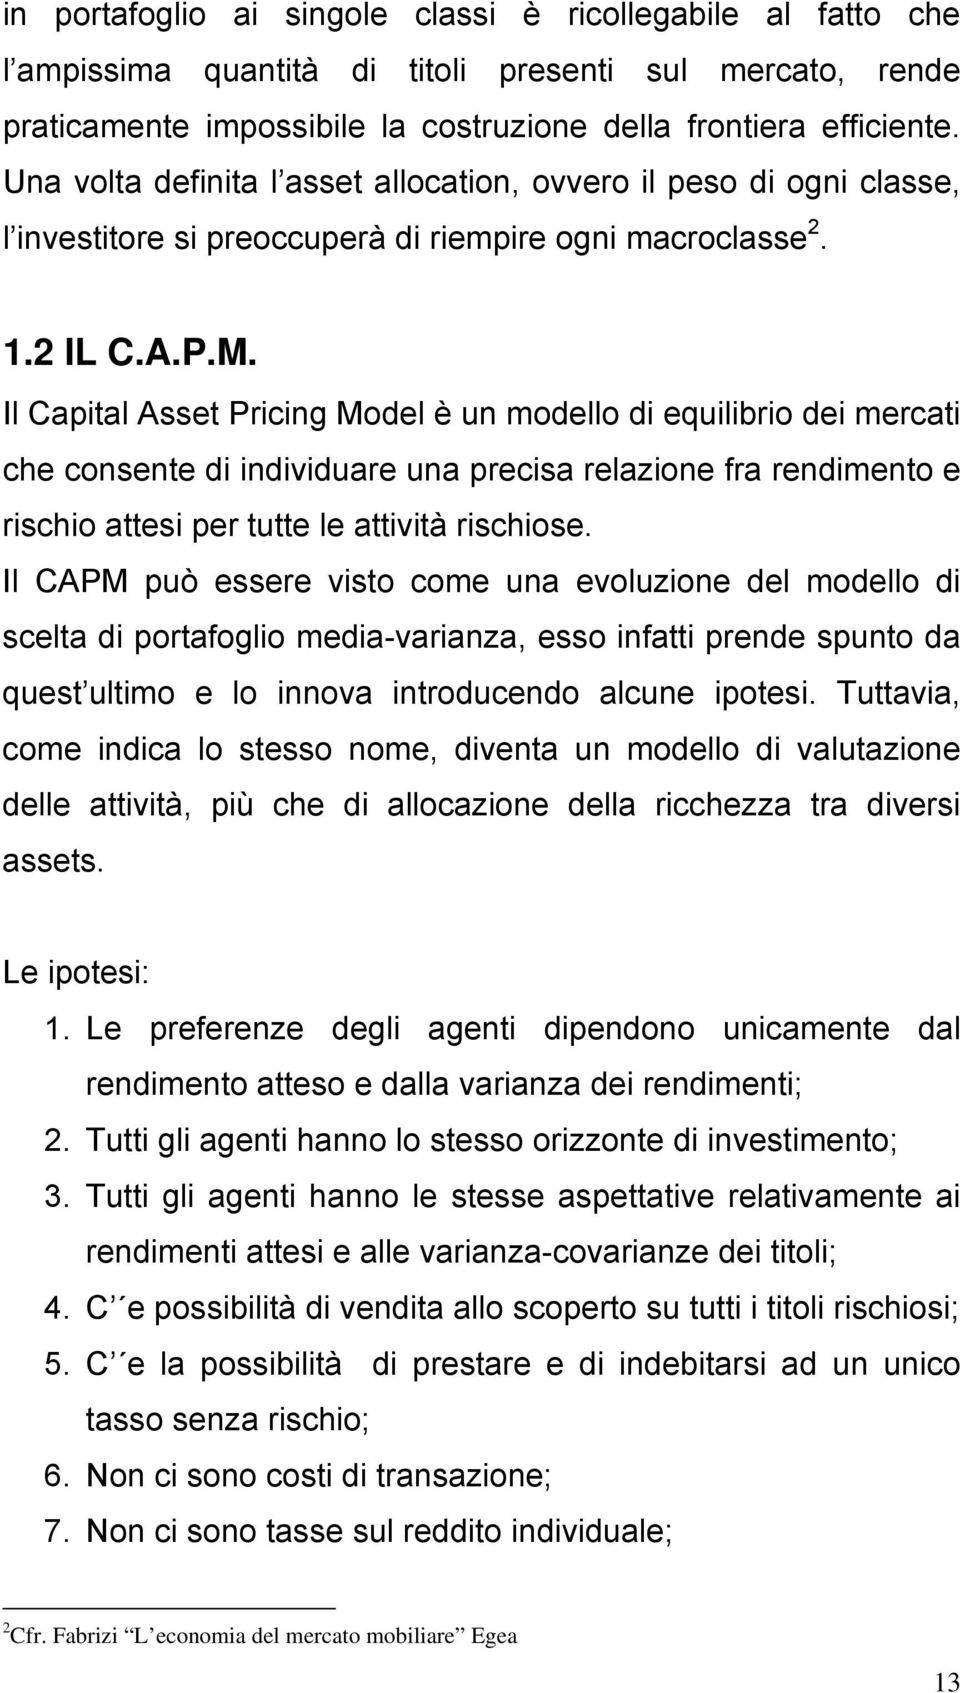 Il Capital Asset Pricing Model è un modello di equilibrio dei mercati che consente di individuare una precisa relazione fra rendimento e rischio attesi per tutte le attività rischiose.